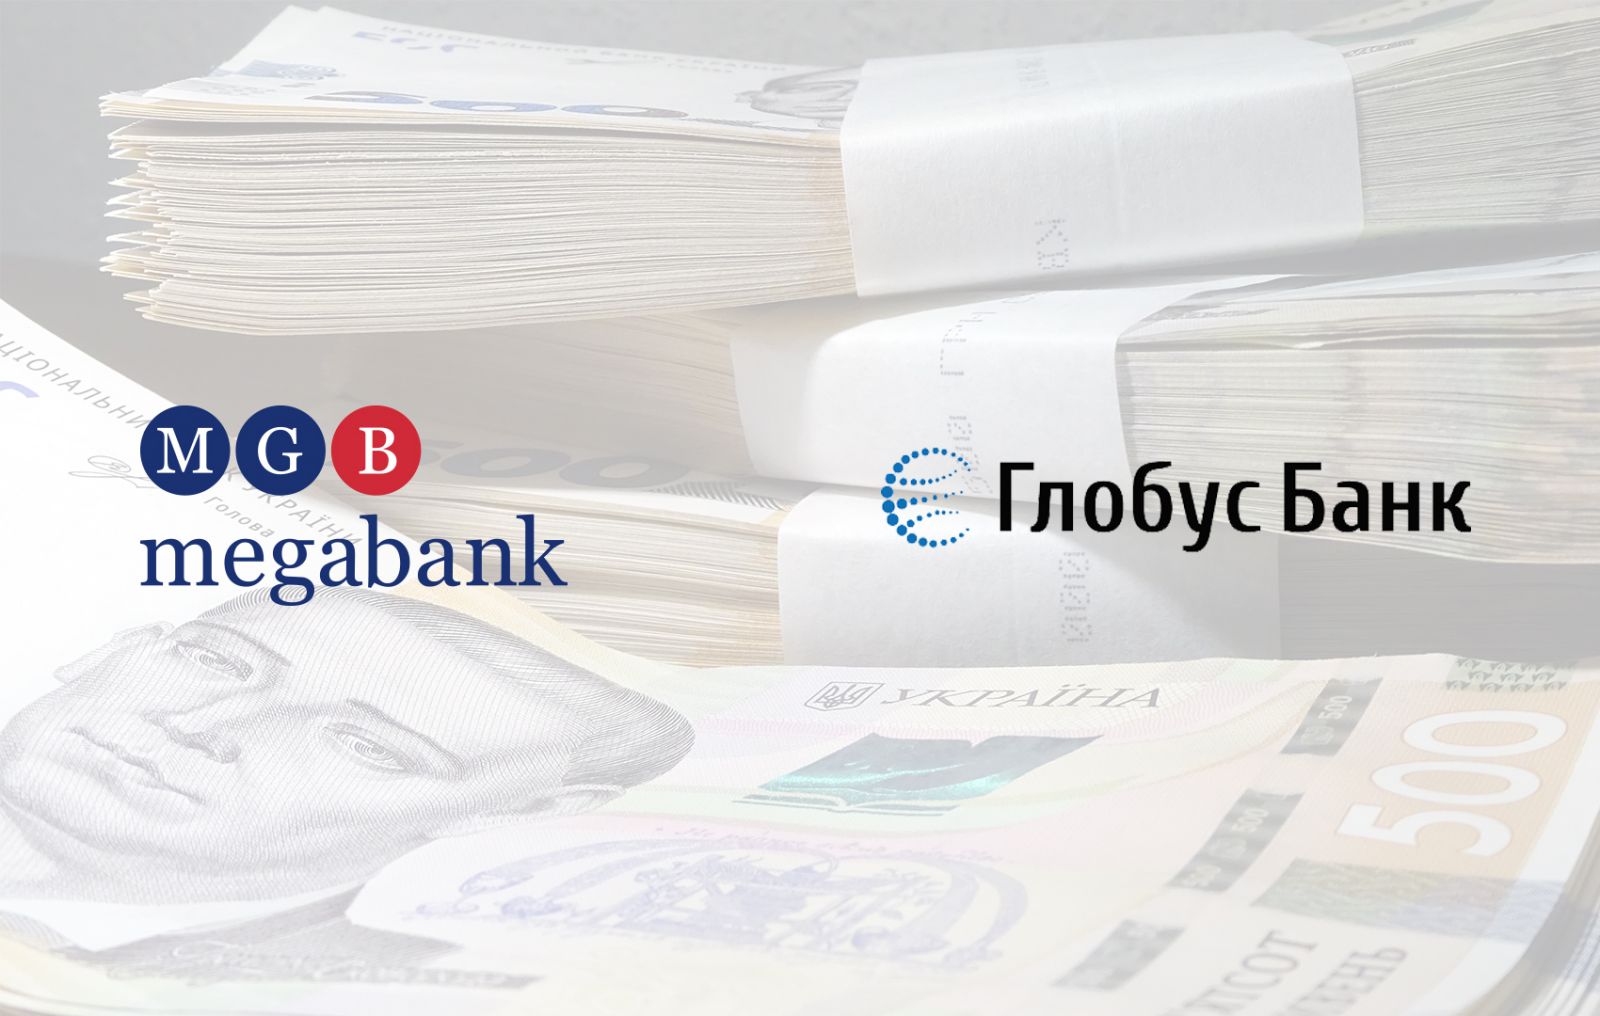 "Мегабанк" стал прямым участником международной платежной системы "Глобус"